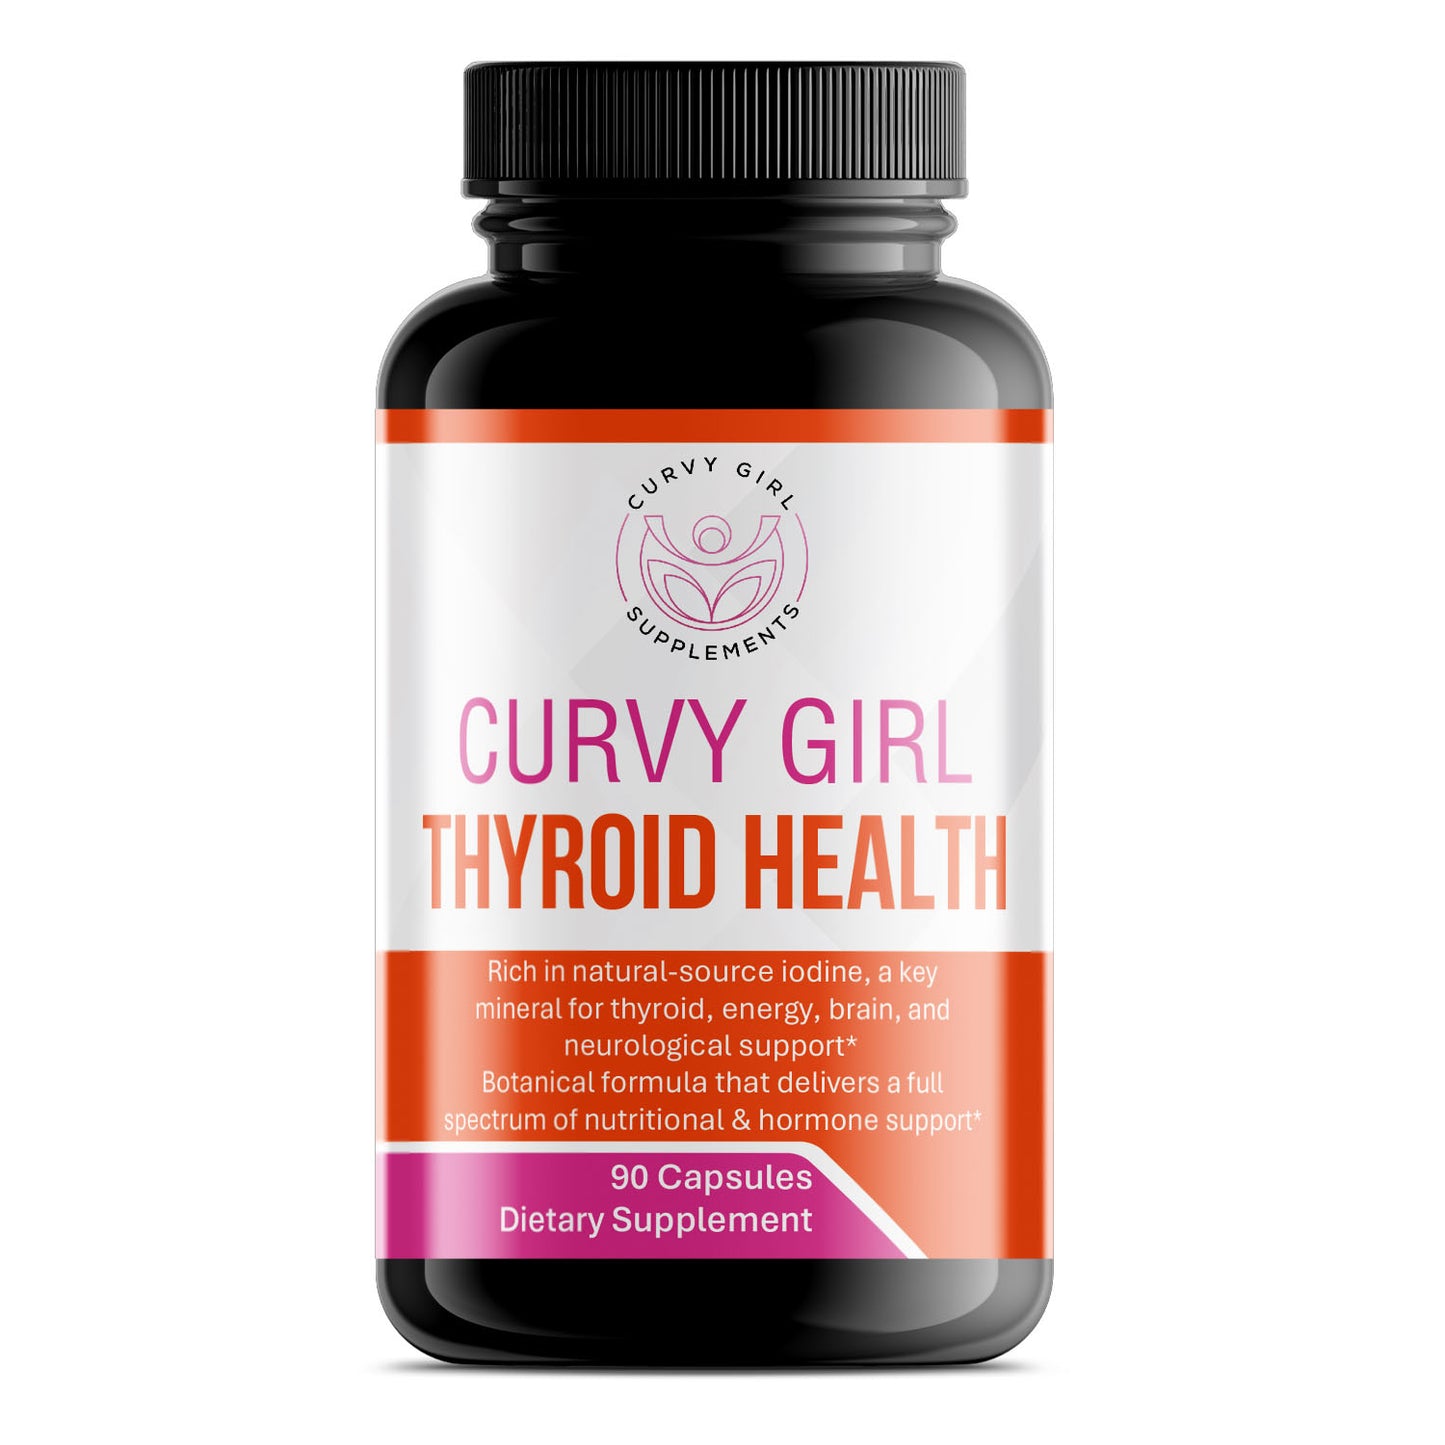 Curvy Girl Thyroid Health